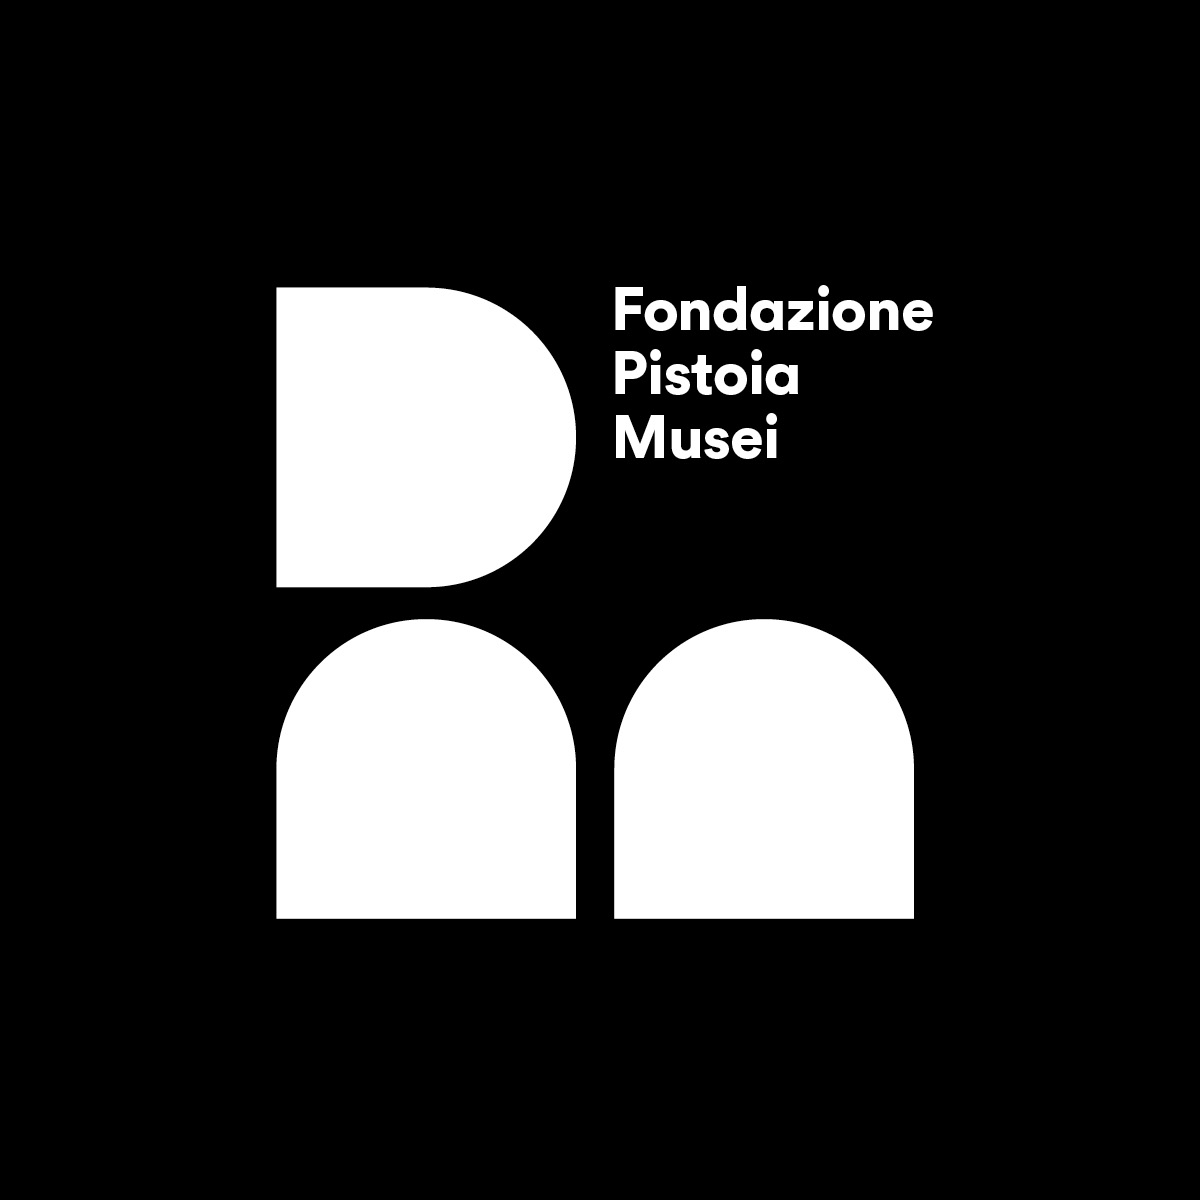 Fondazione-Pistoia-Musei